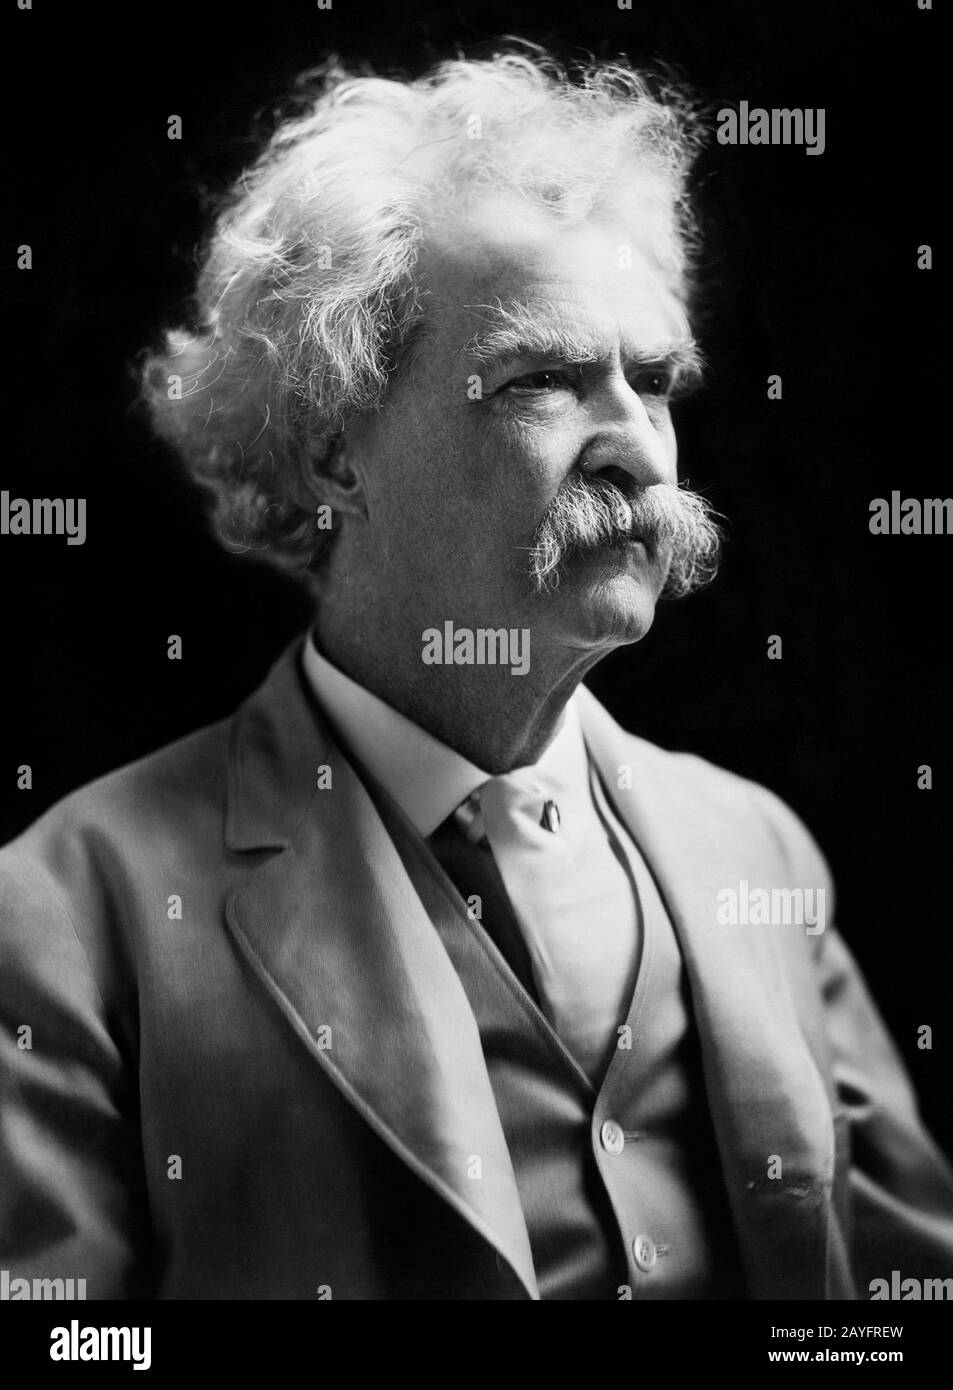 Photo de portrait vintage de l'écrivain et humoriste américain Samuel Langhorne Clemens (1835 – 1910), mieux connu par son nom de plume de Mark Twain. Photo vers 1907 par un F Bradley de New York. Banque D'Images